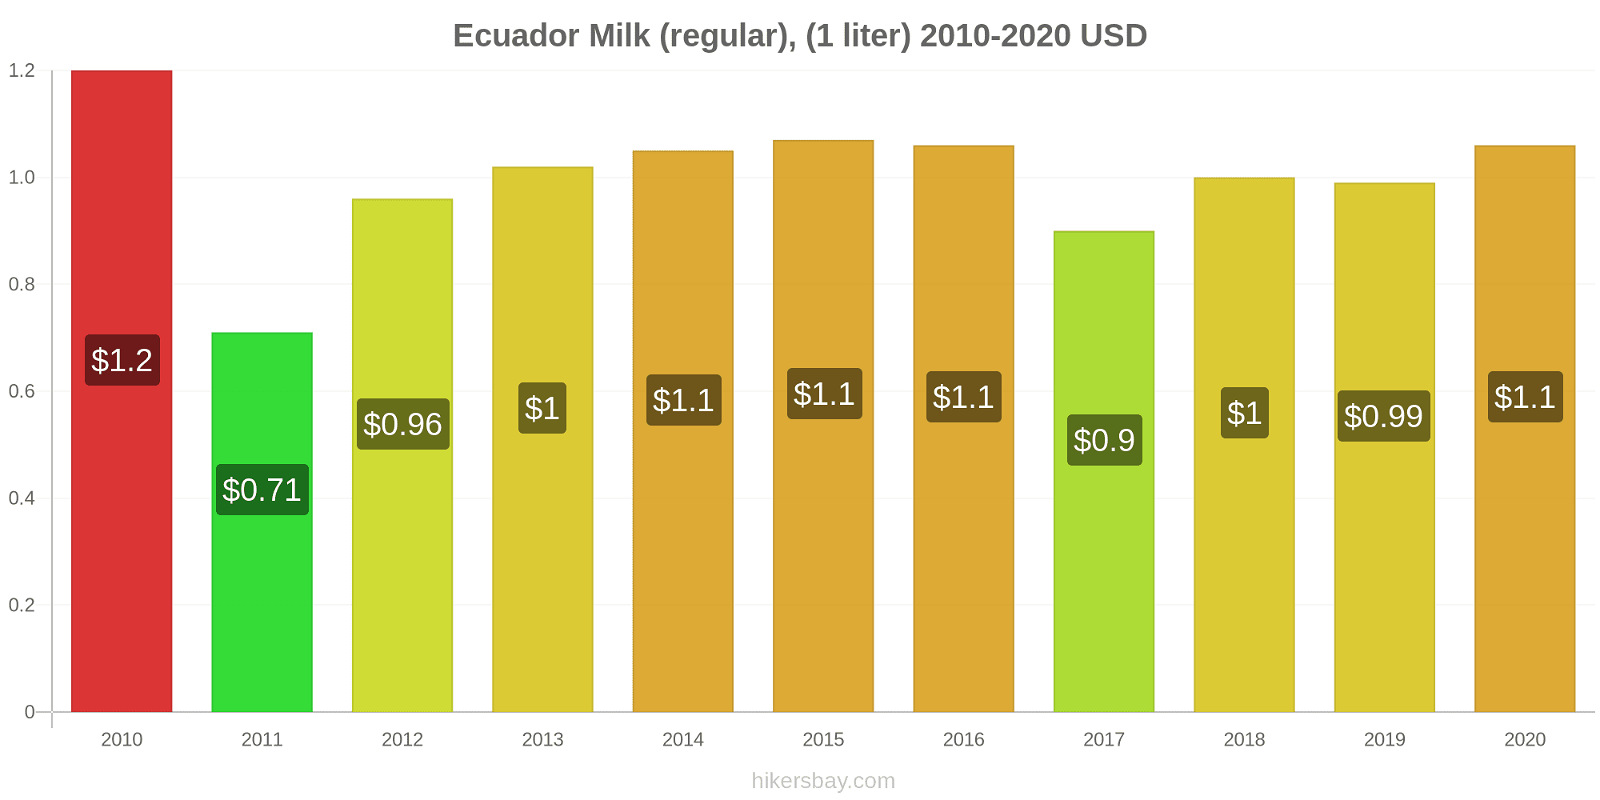 Ecuador price changes Milk (regular), (1 liter) hikersbay.com